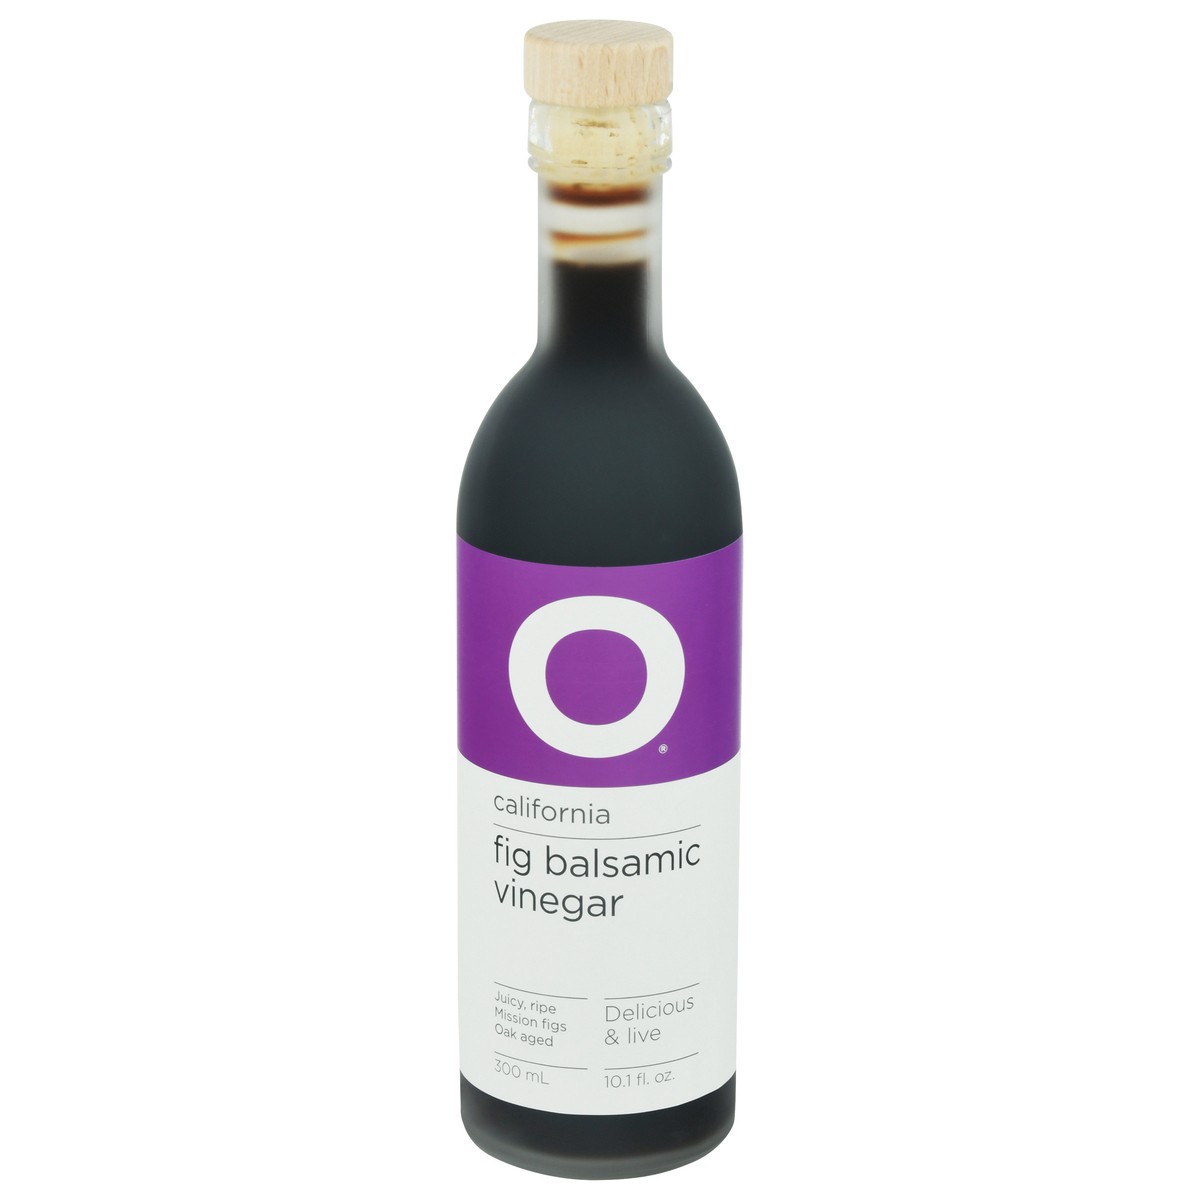 slide 11 of 14, O Vinegar Balsamic Fig Cali, 300 ml